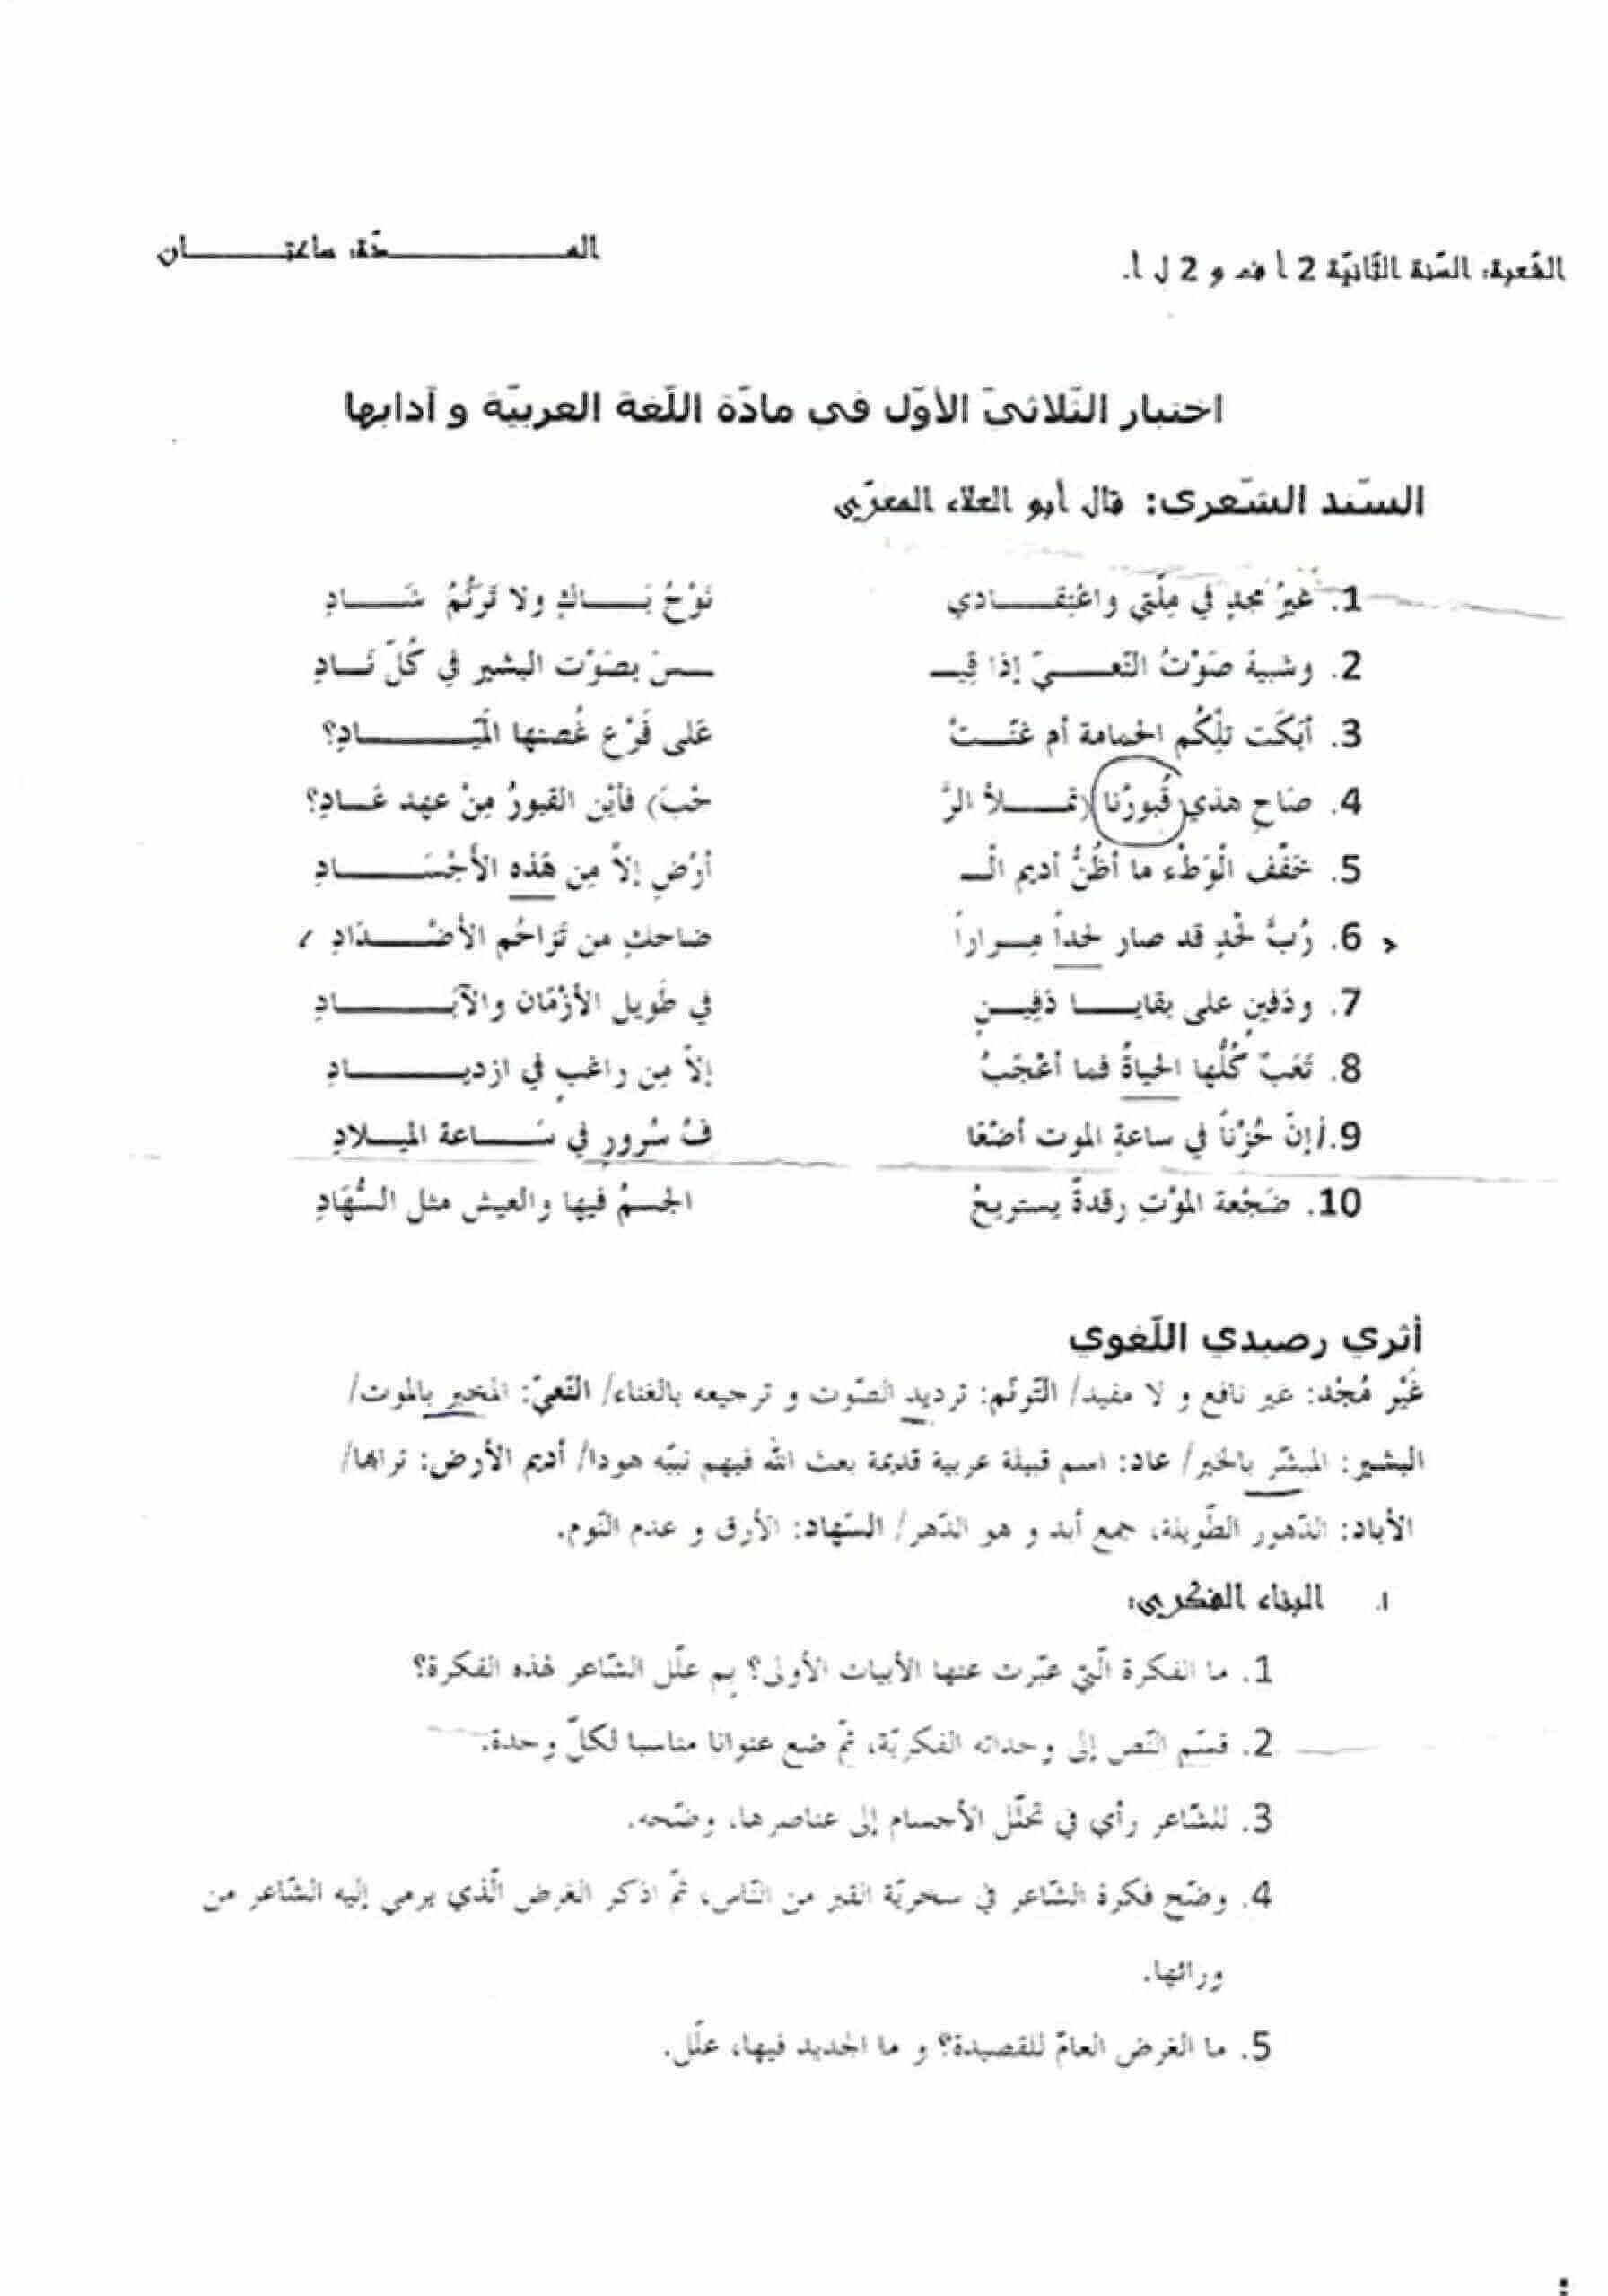 اختبار الفصل الأول في اللغة العربية للسنة ثانية ثانوي شعبة آداب و فلسفة النموذج 3